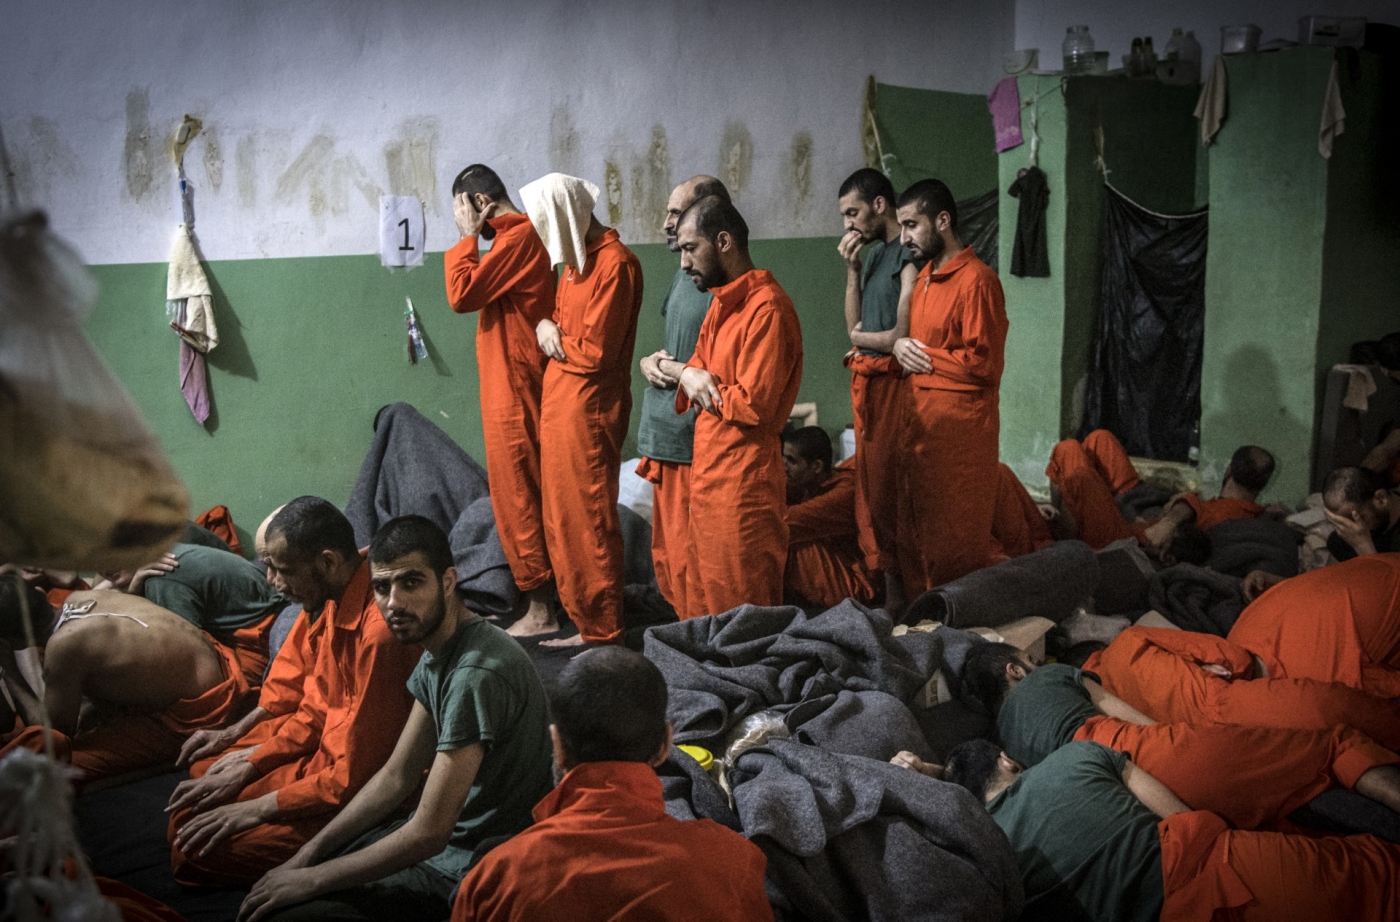 Des hommes soupçonnés d'être affiliés au groupe État islamique prient dans une cellule de la prison de Sinaa, dans le quartier de Ghwayran à Hassaké, le 26 octobre 2019 (AFP/photo d'archives)